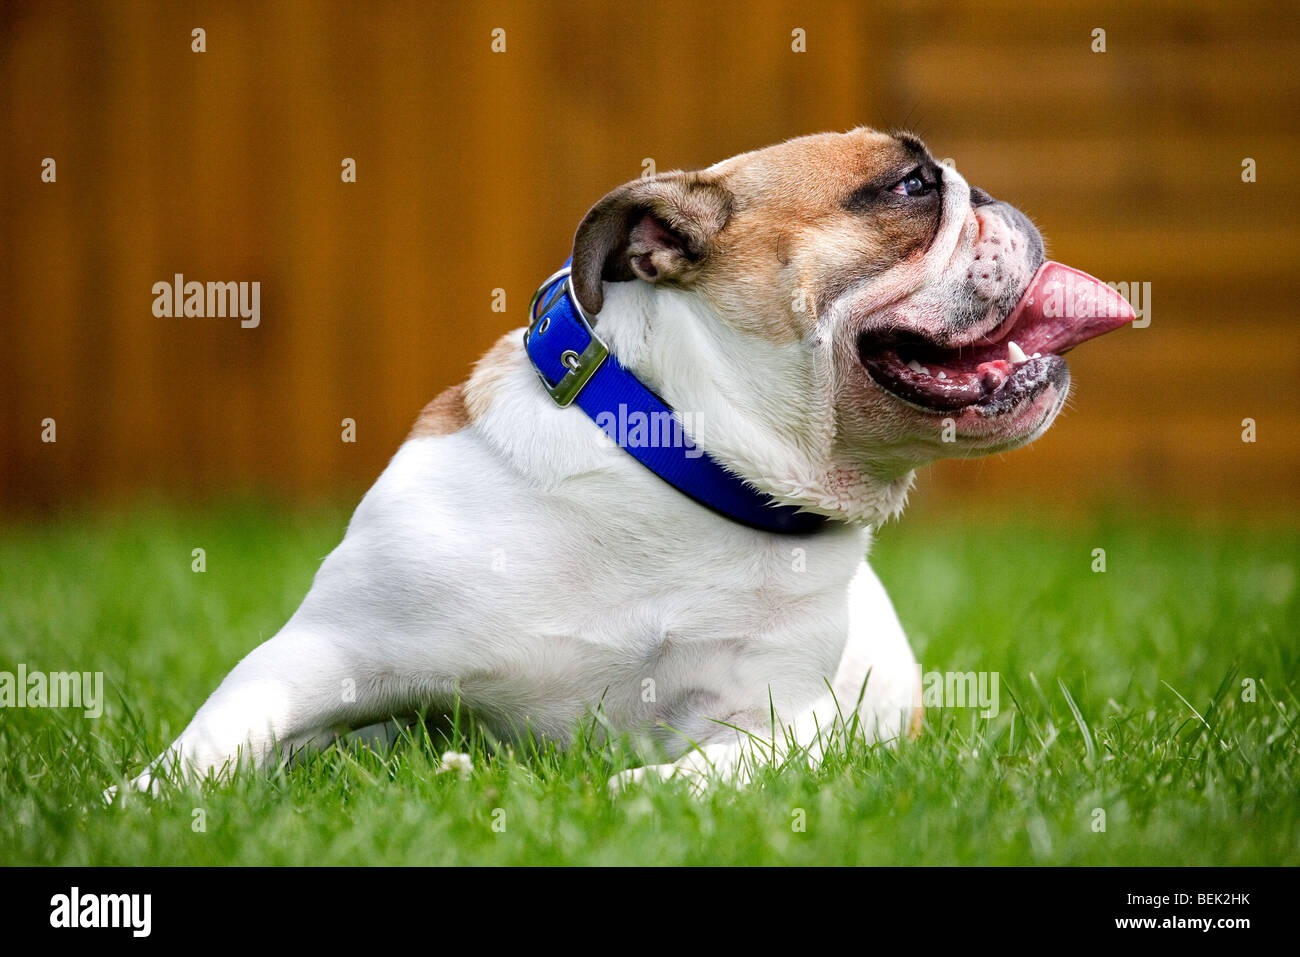 Bulldog, British dog breed on lawn in garden Stock Photo